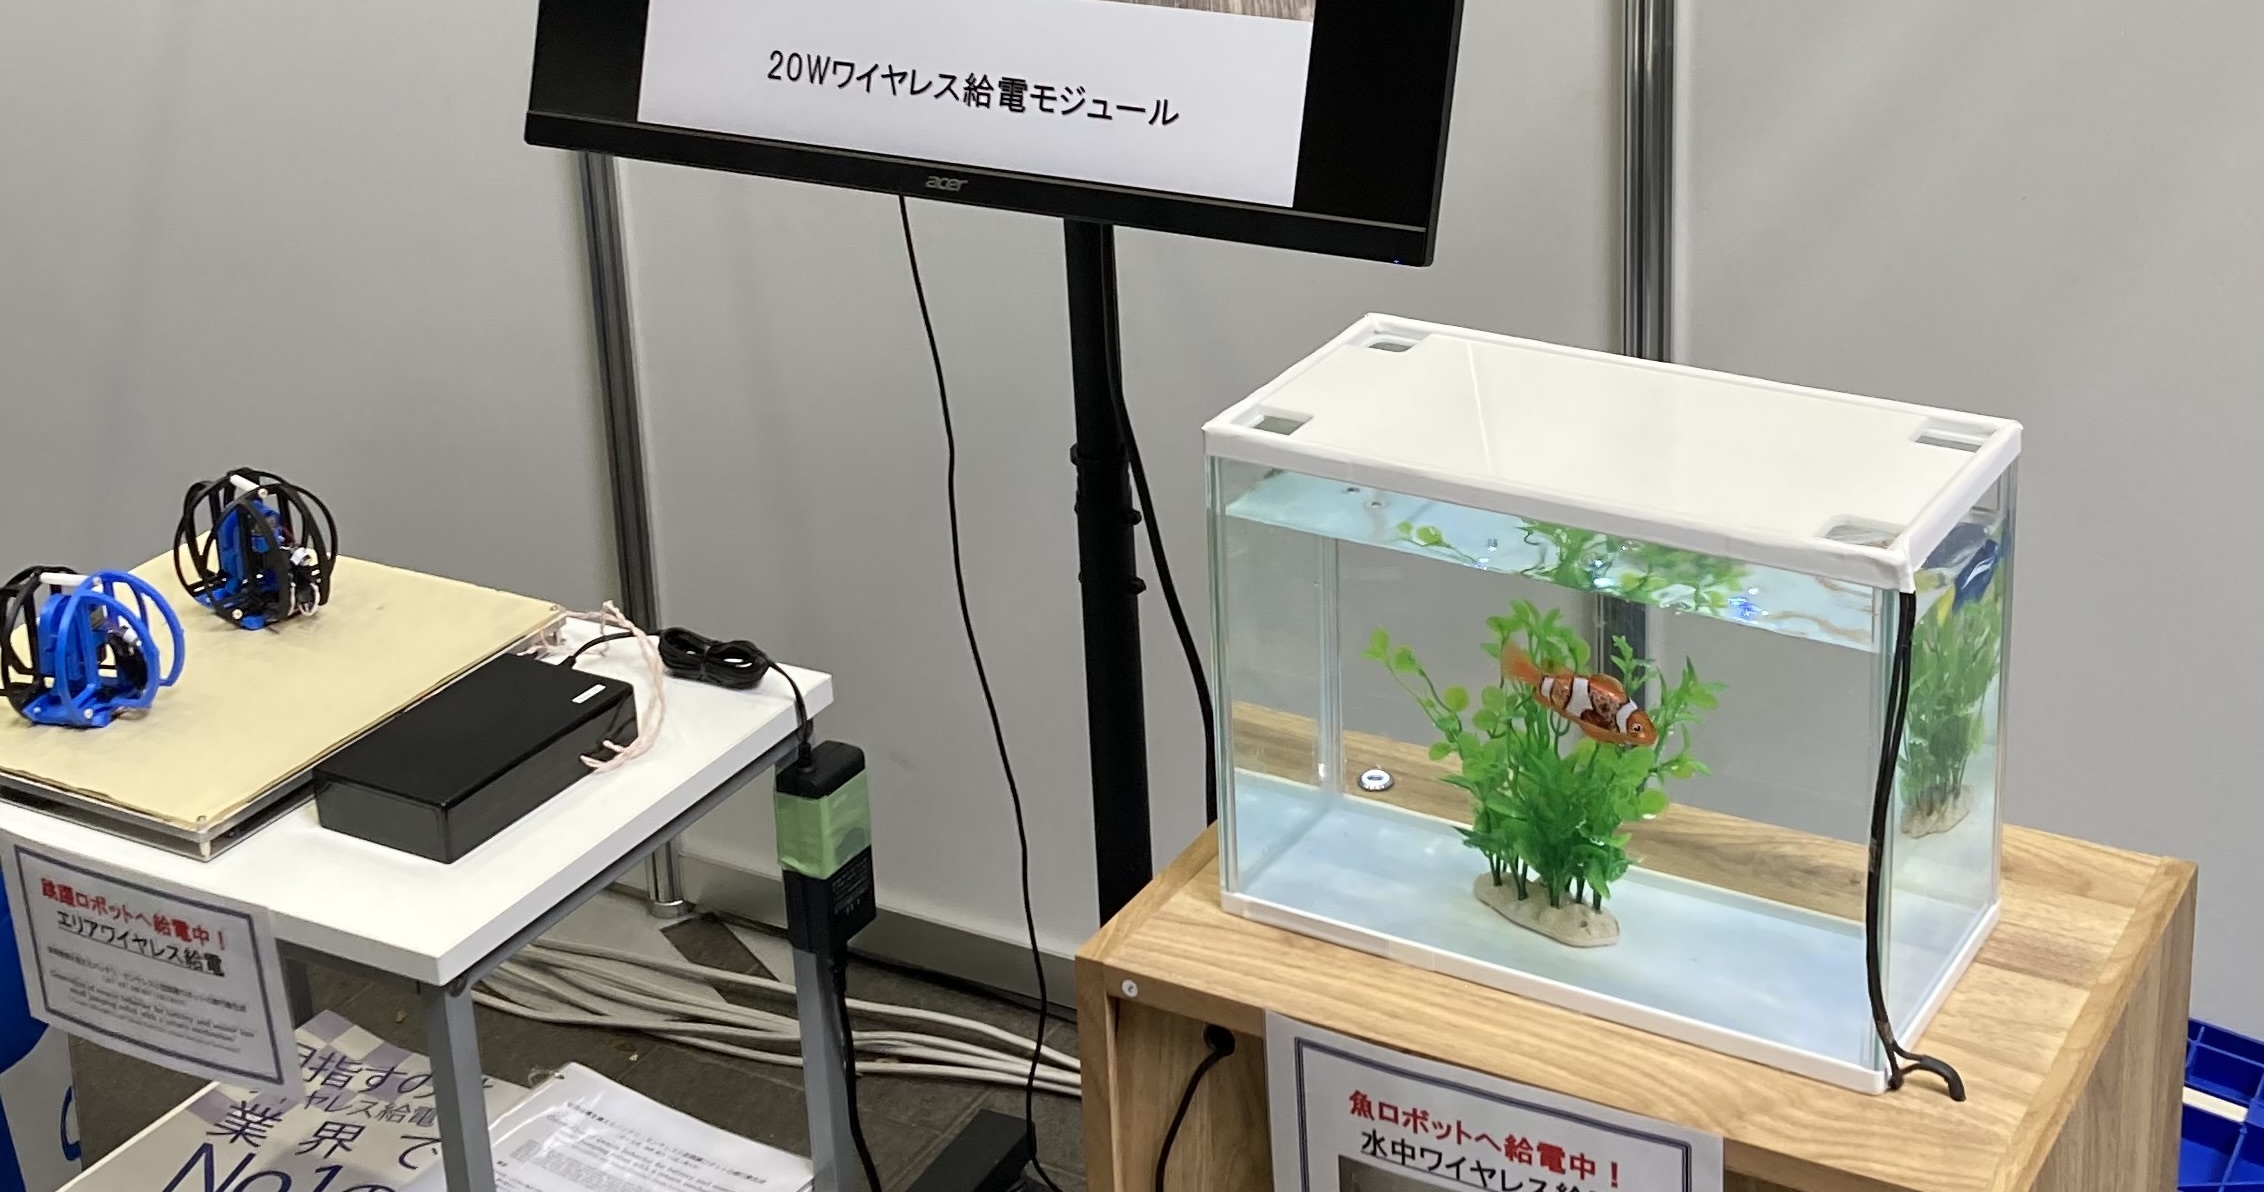 『第40回日本ロボット学会』の機器展示へ参加してきました！